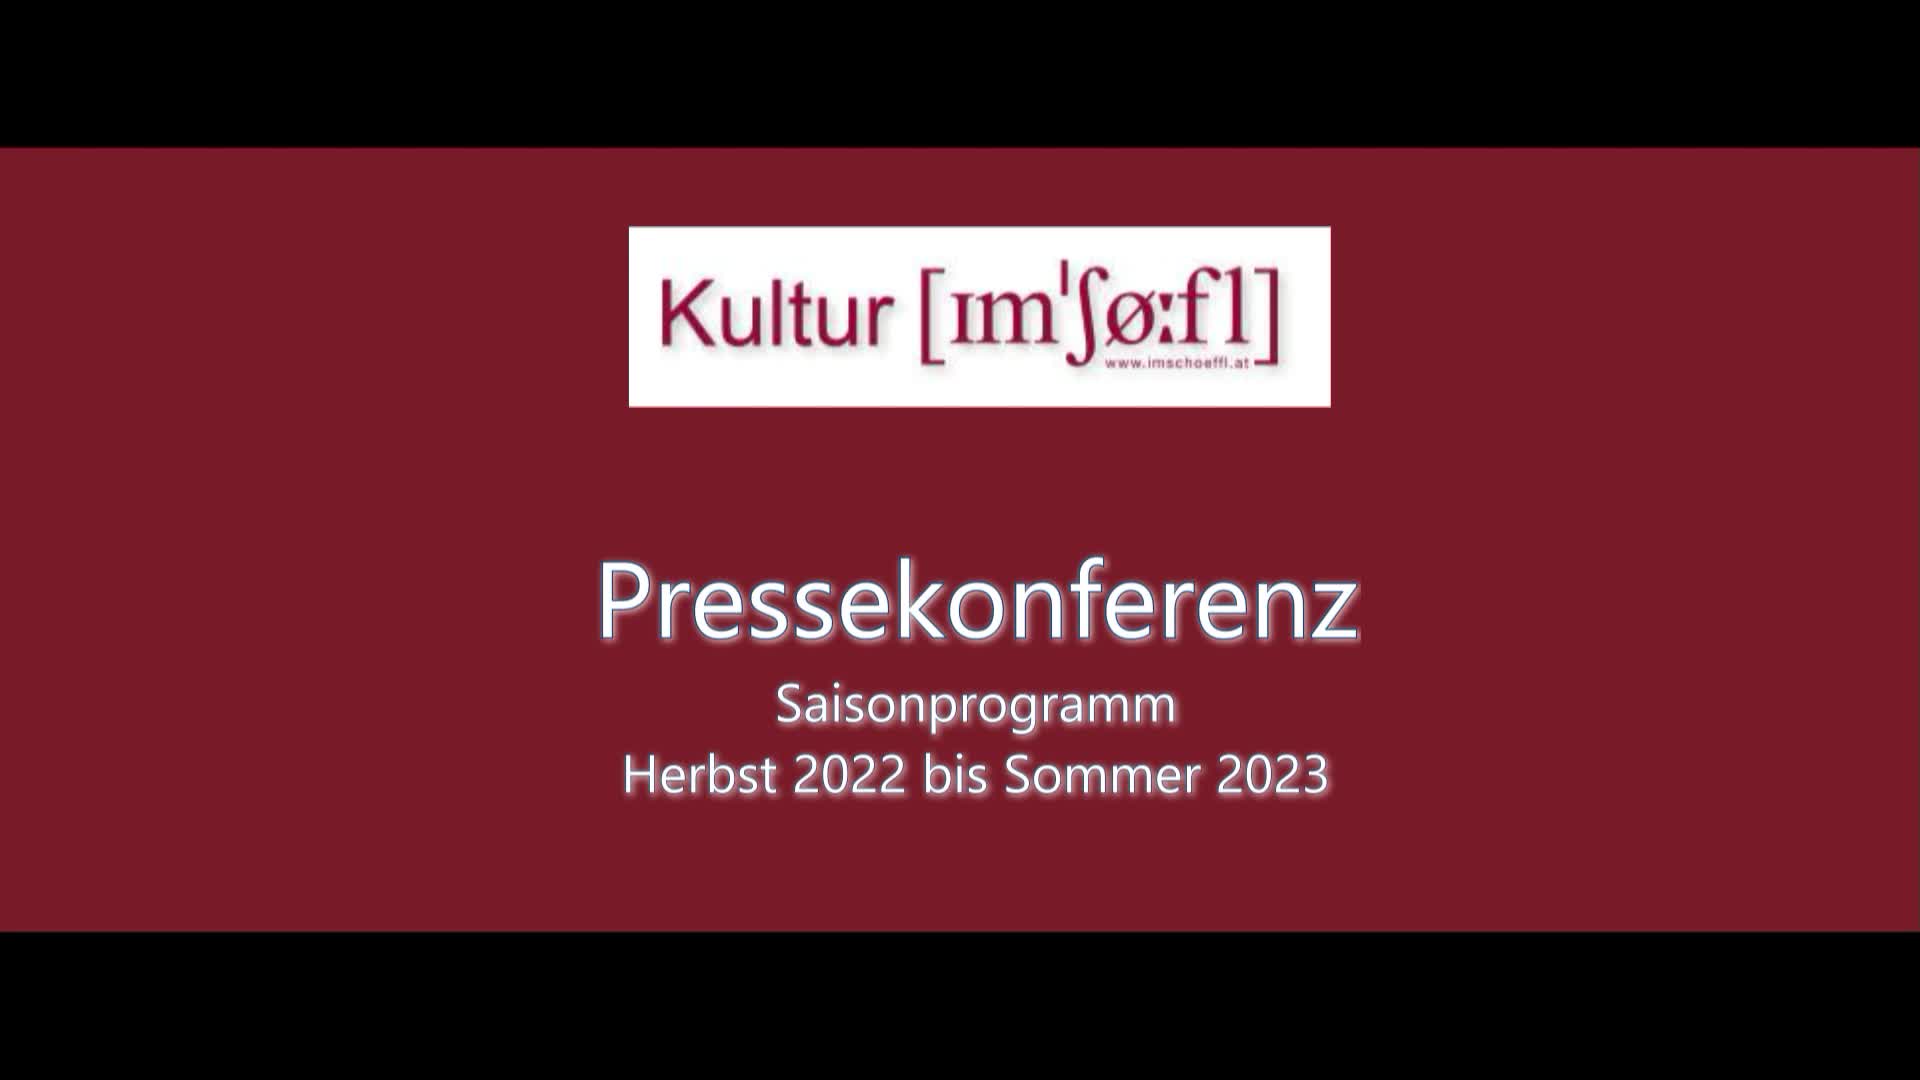 Pressekonferenz Saisonprogramm Herbst 2022/Frühjahr 2023